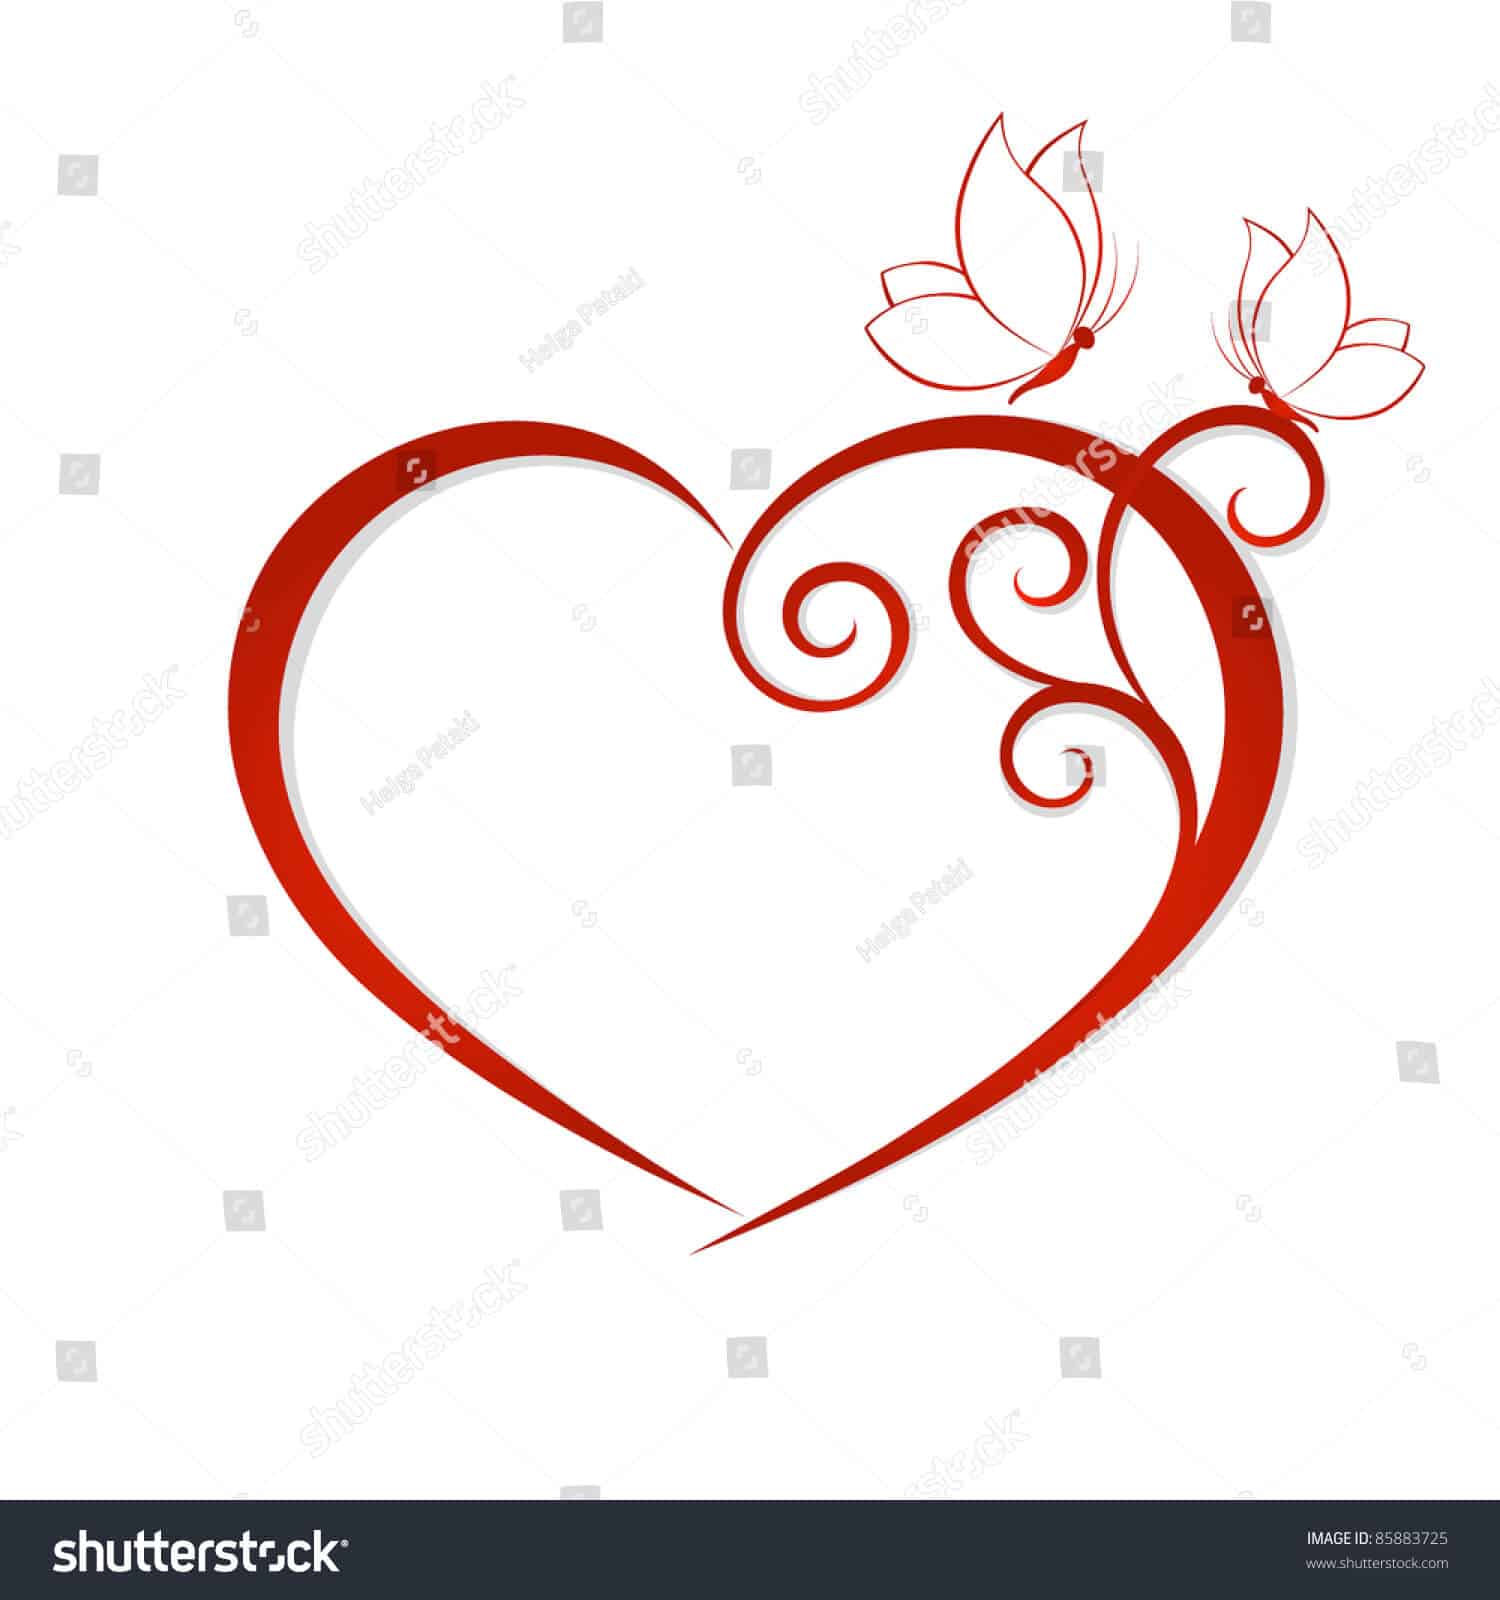 1 triệu 600 ngàn vector biểu tượng tình yêu tuyệt đẹp trên Shutterstock